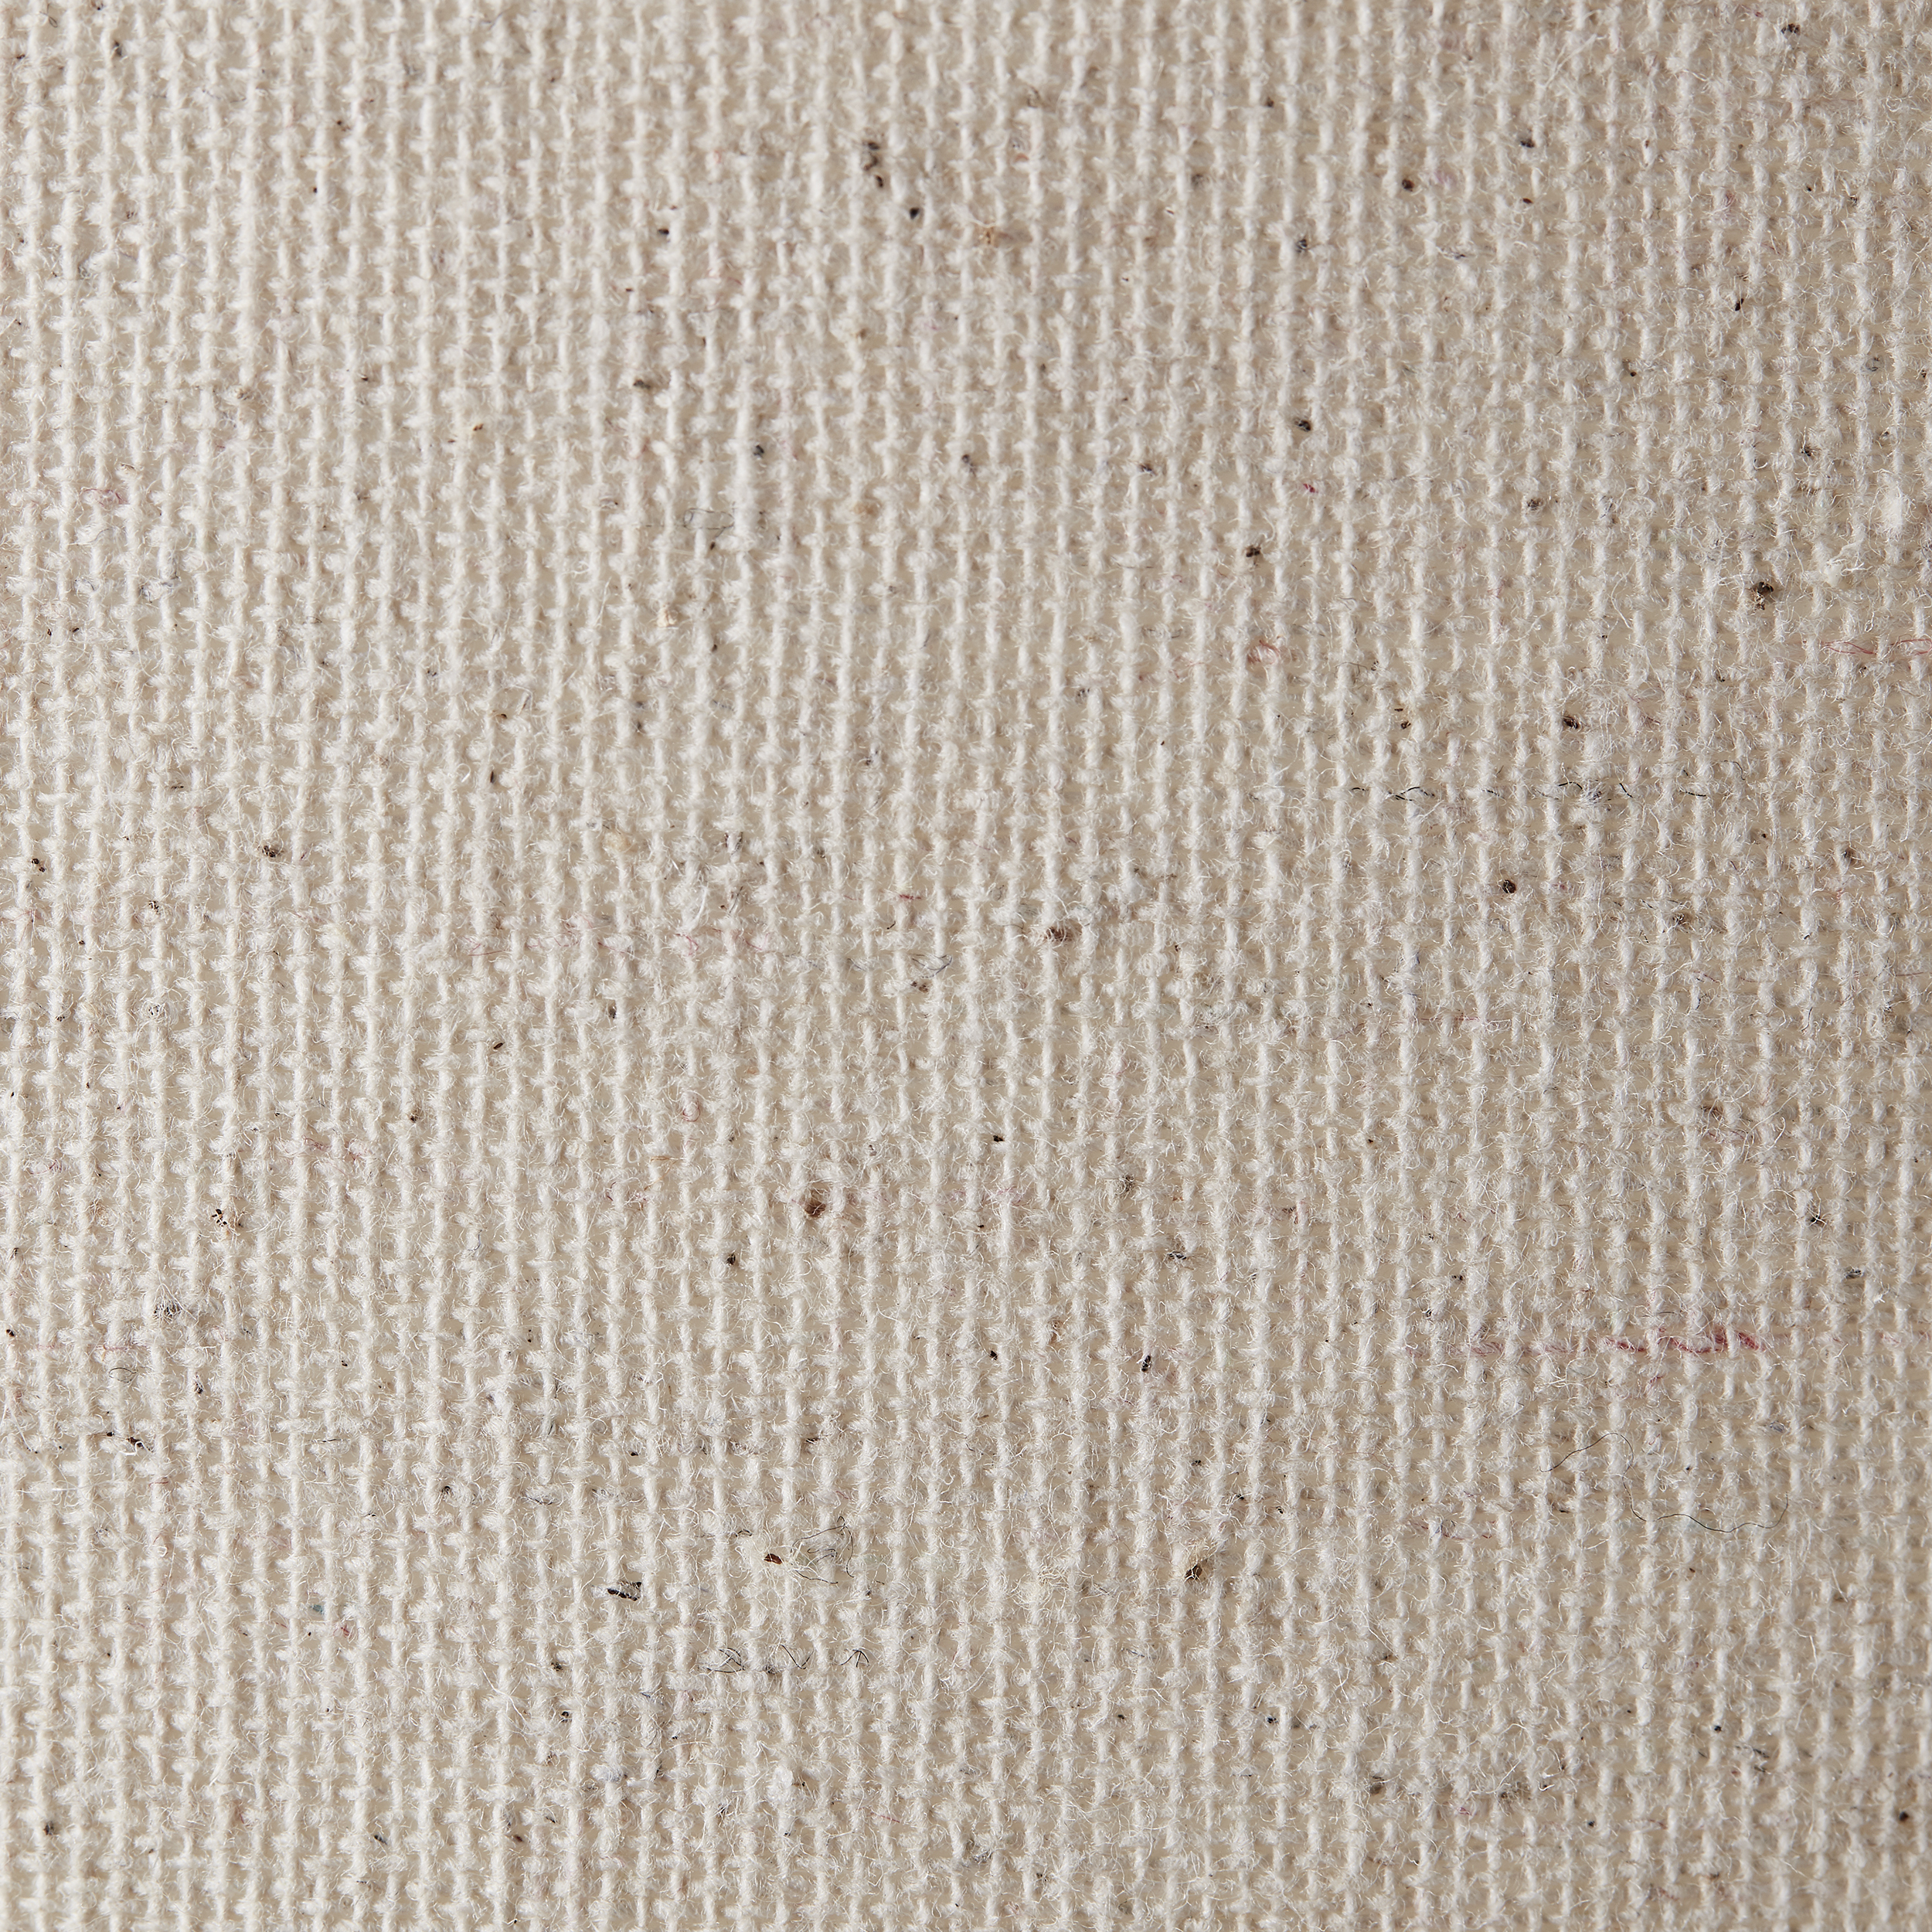 Tischleuchten Laraine natur/beige Textil/Papier/Metall